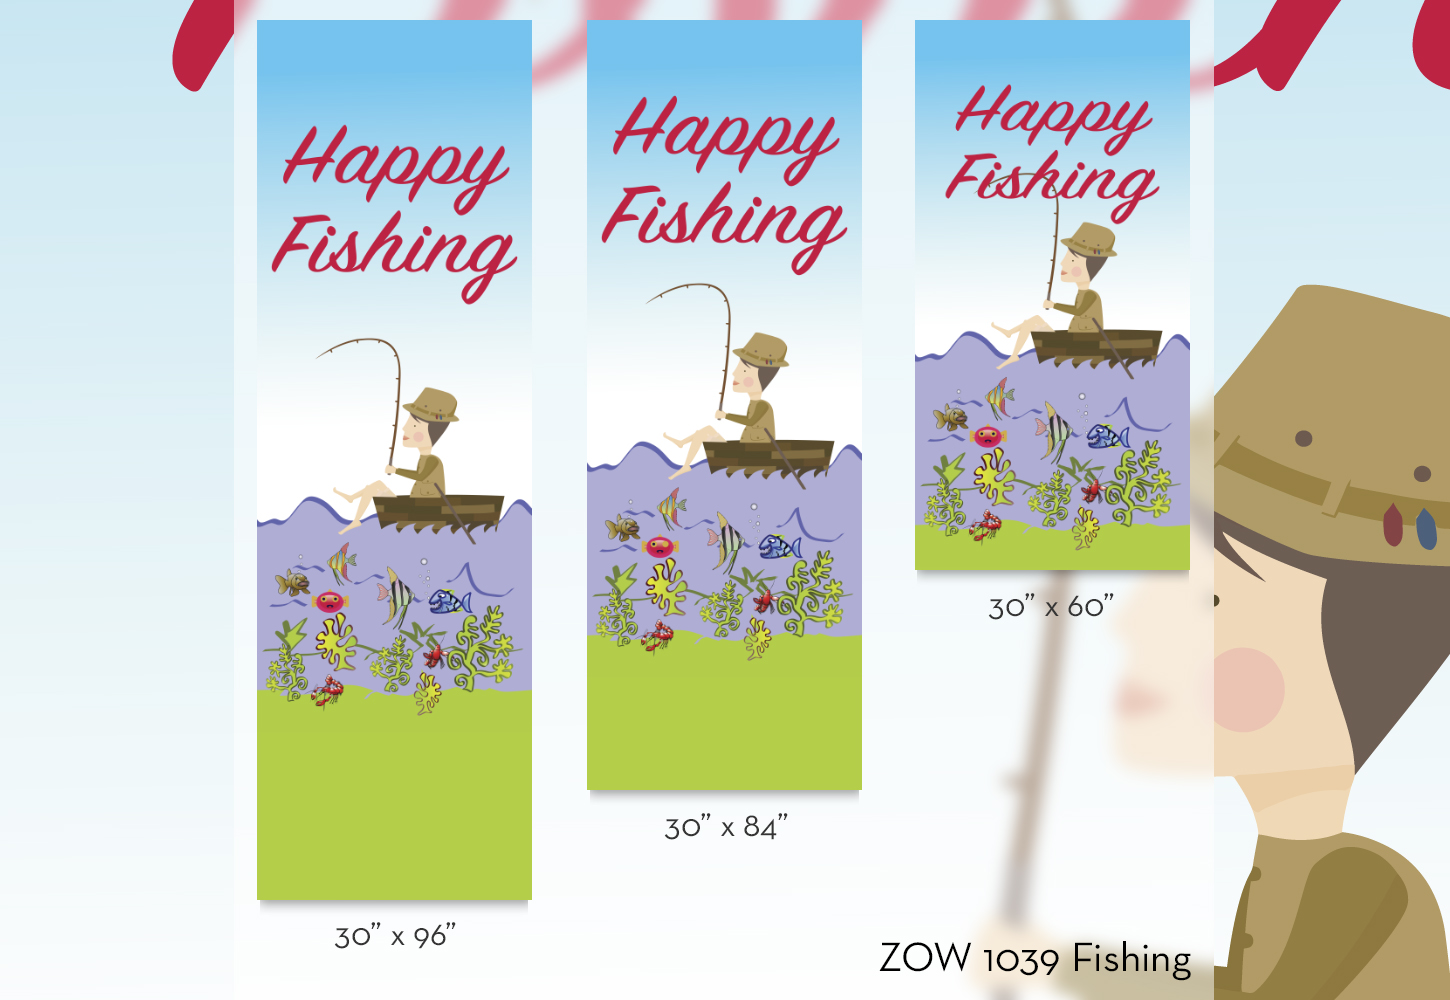 ZOW 1039 Fishing